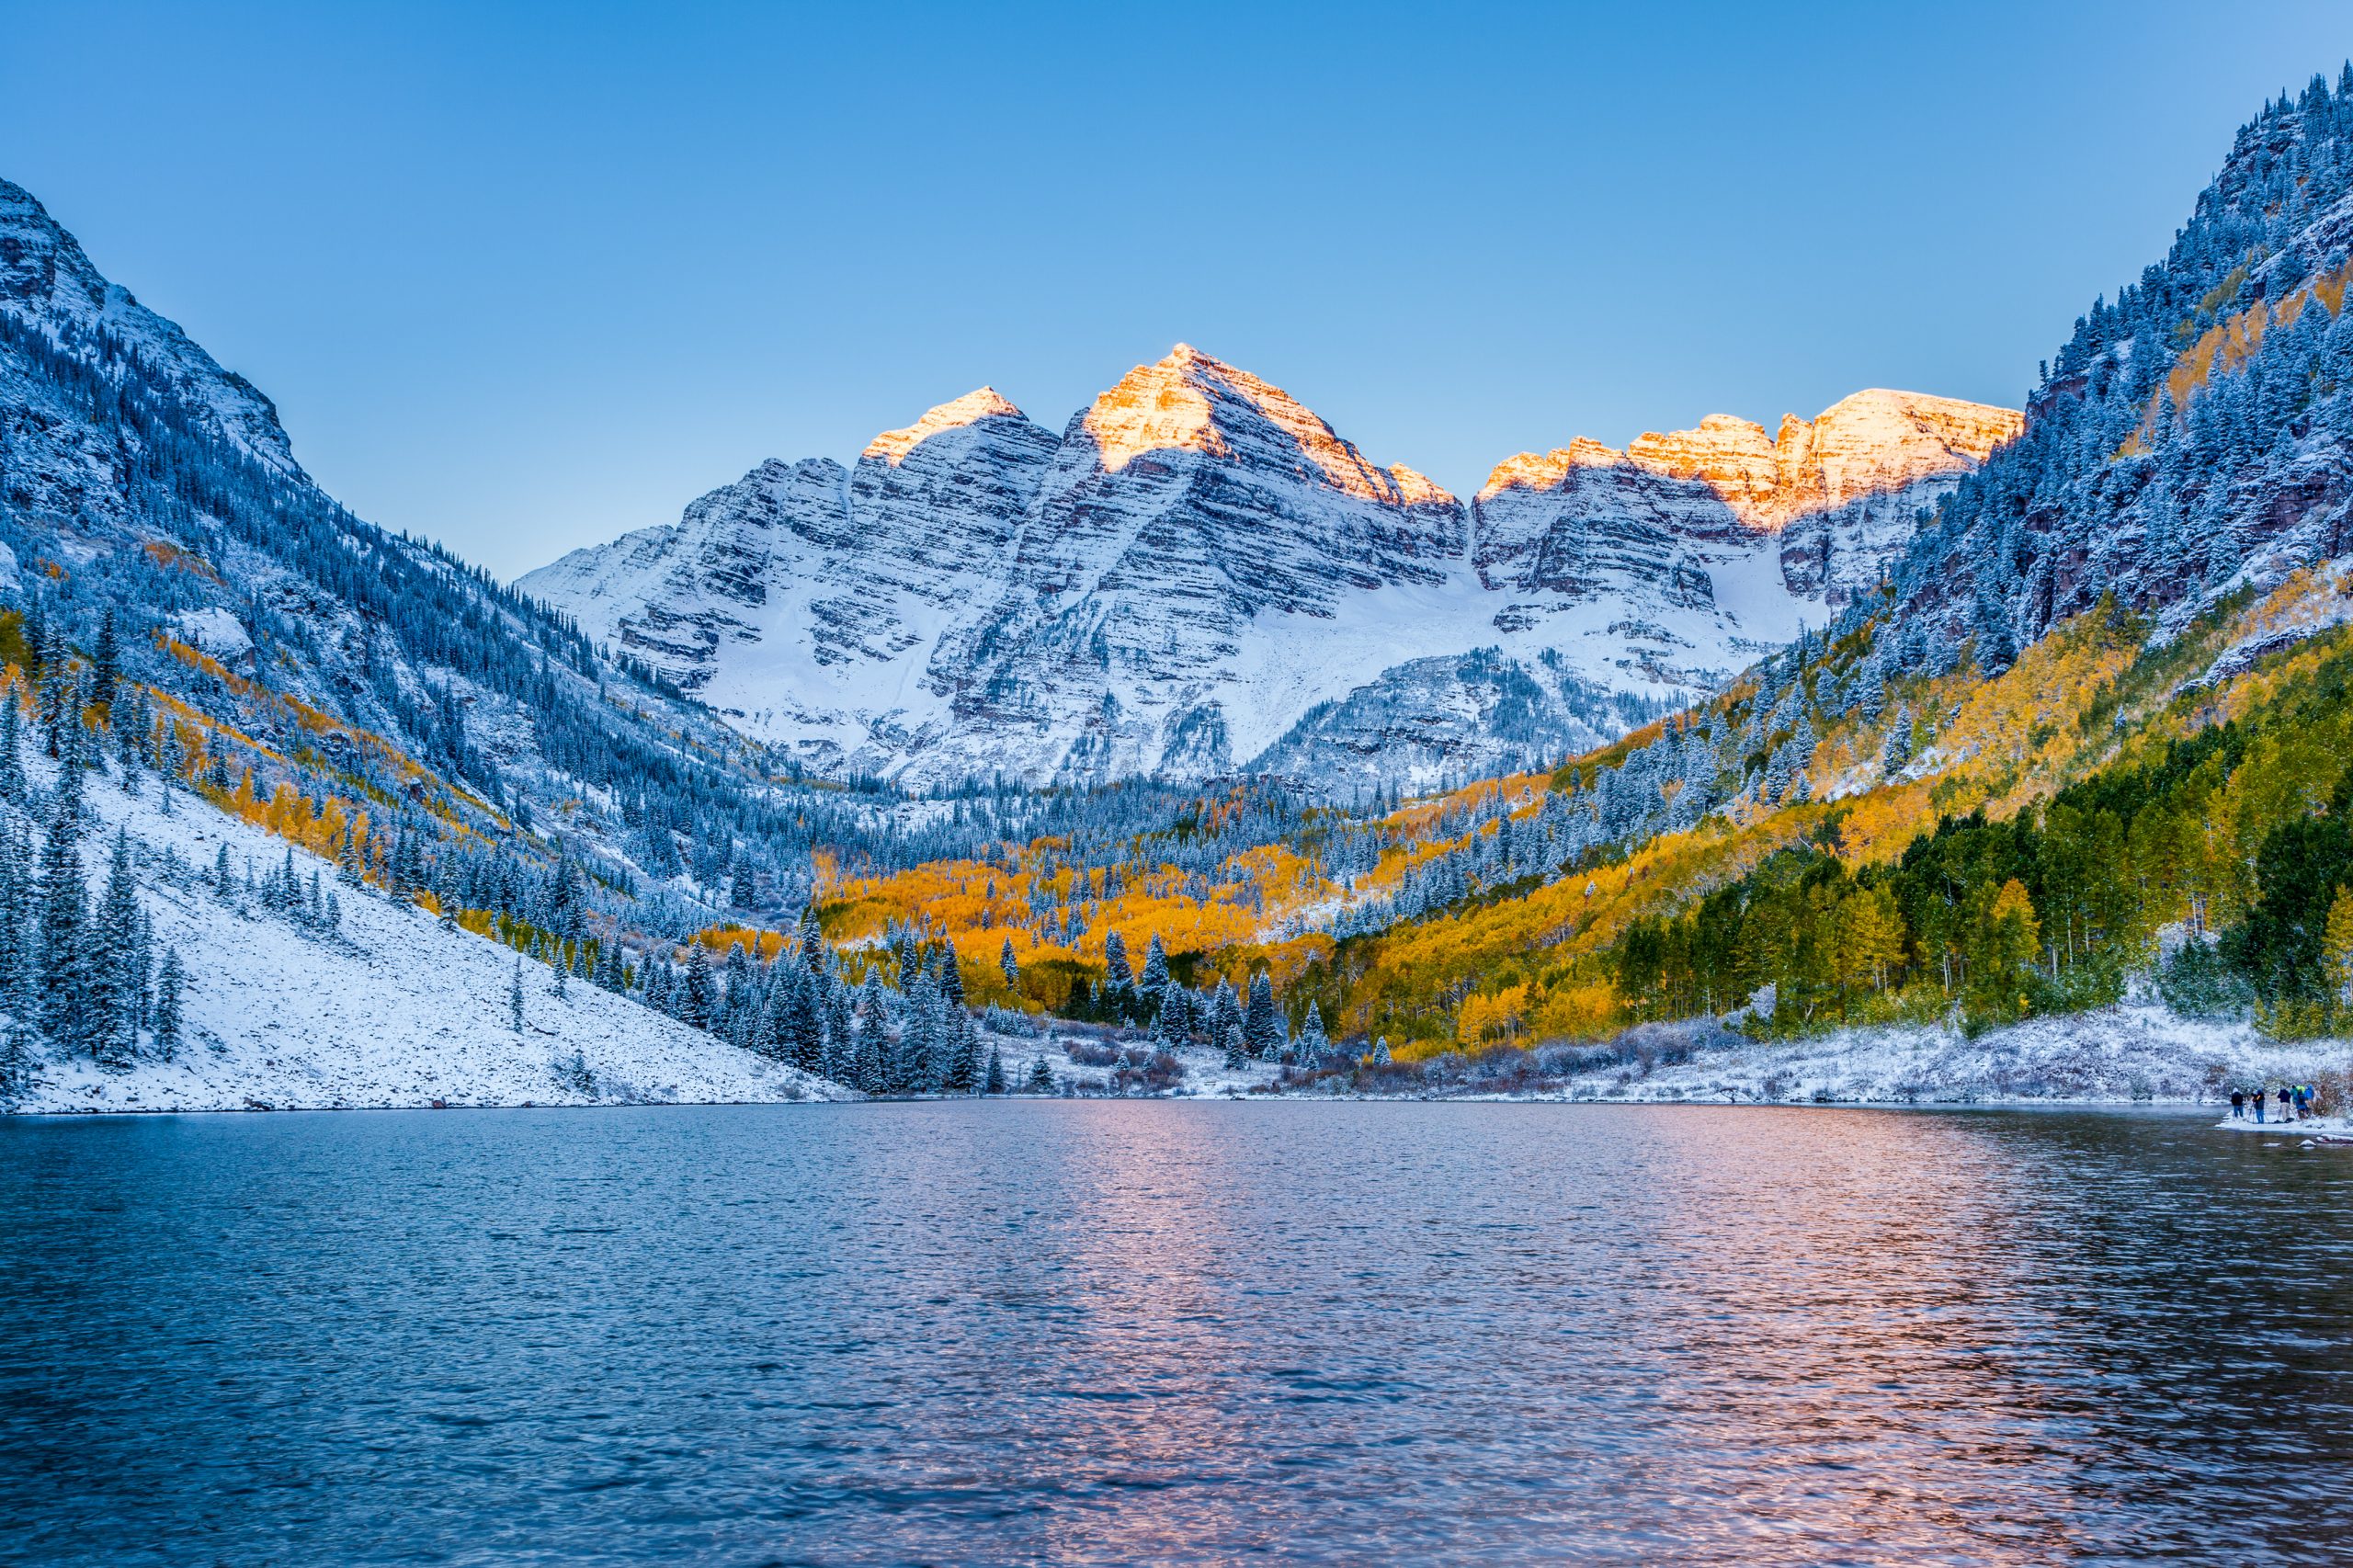 Aspen Colorado outdoors